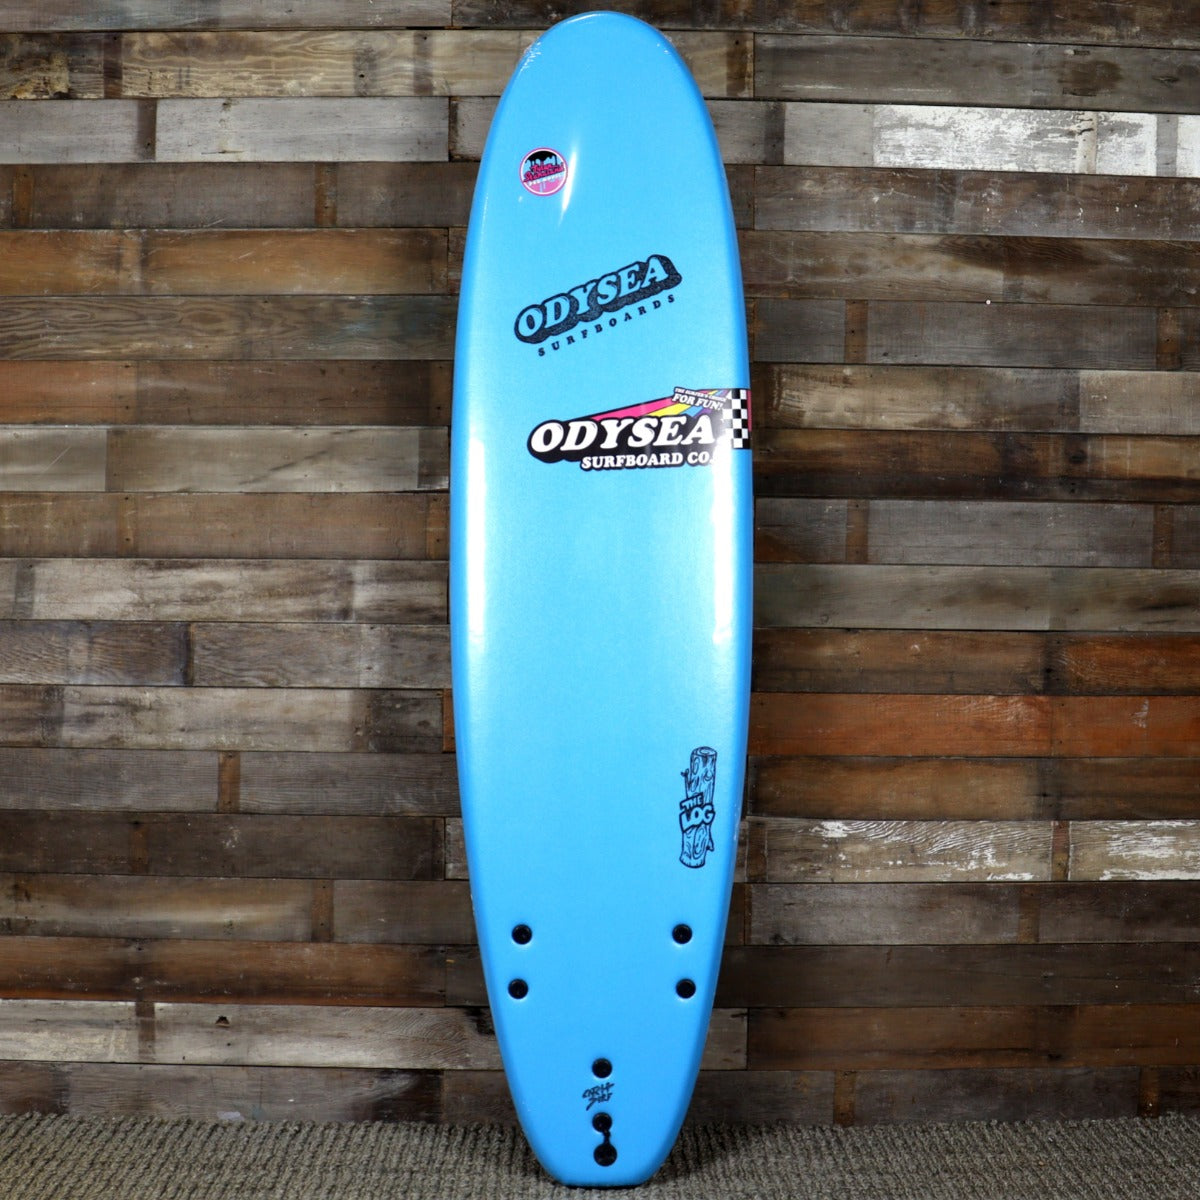 Catch Surf Odysea Log × Tyler Stanaland Pro 7'0 x 22 x 3 ⅛